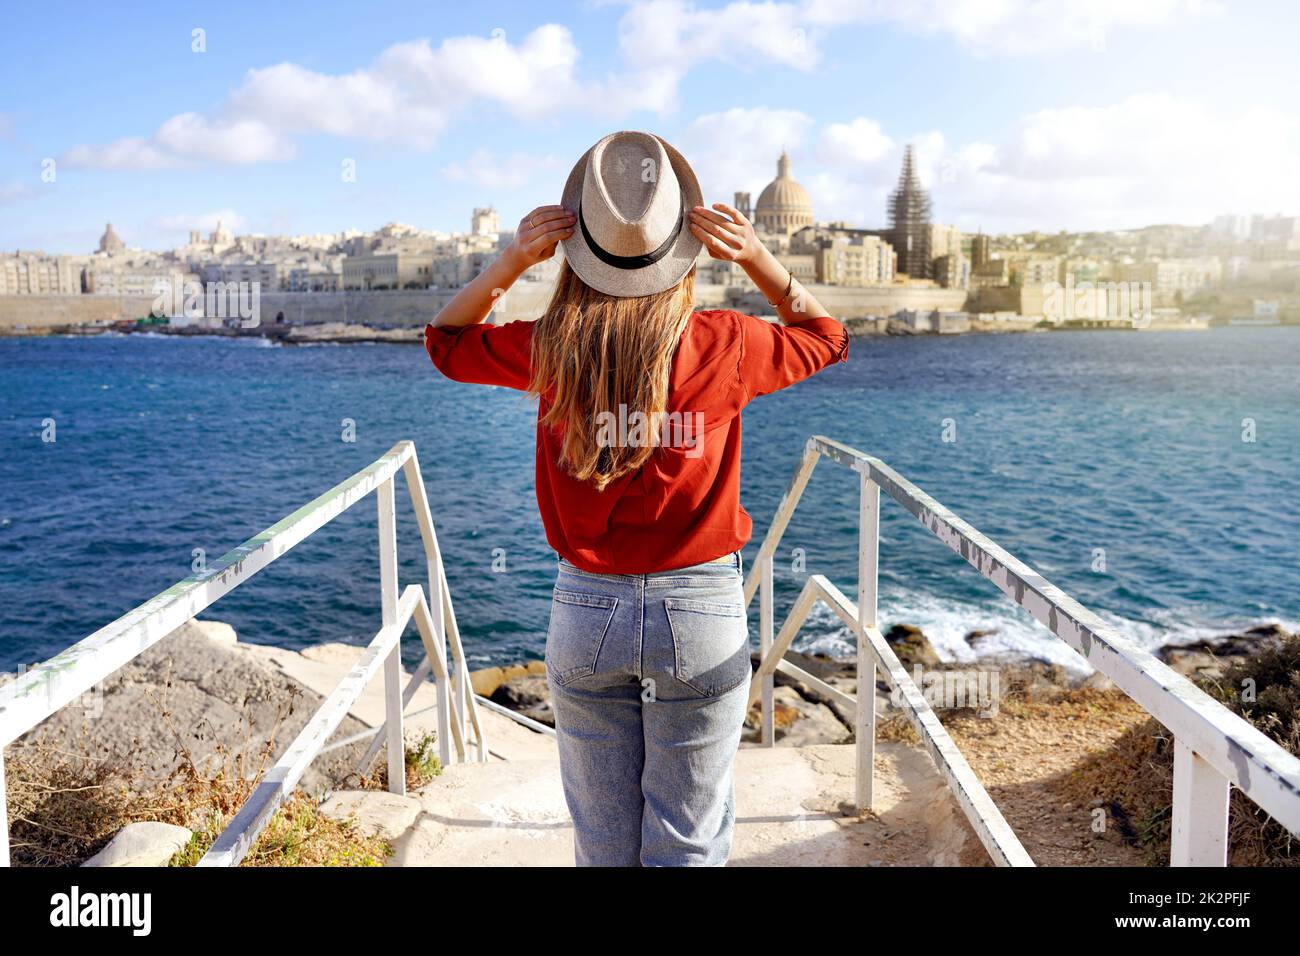 Vacances à Malte. Vue arrière de la belle fille appréciant la vue sur la ville de la Valette avec l'eau bleue de la mer Méditerranée. Banque D'Images